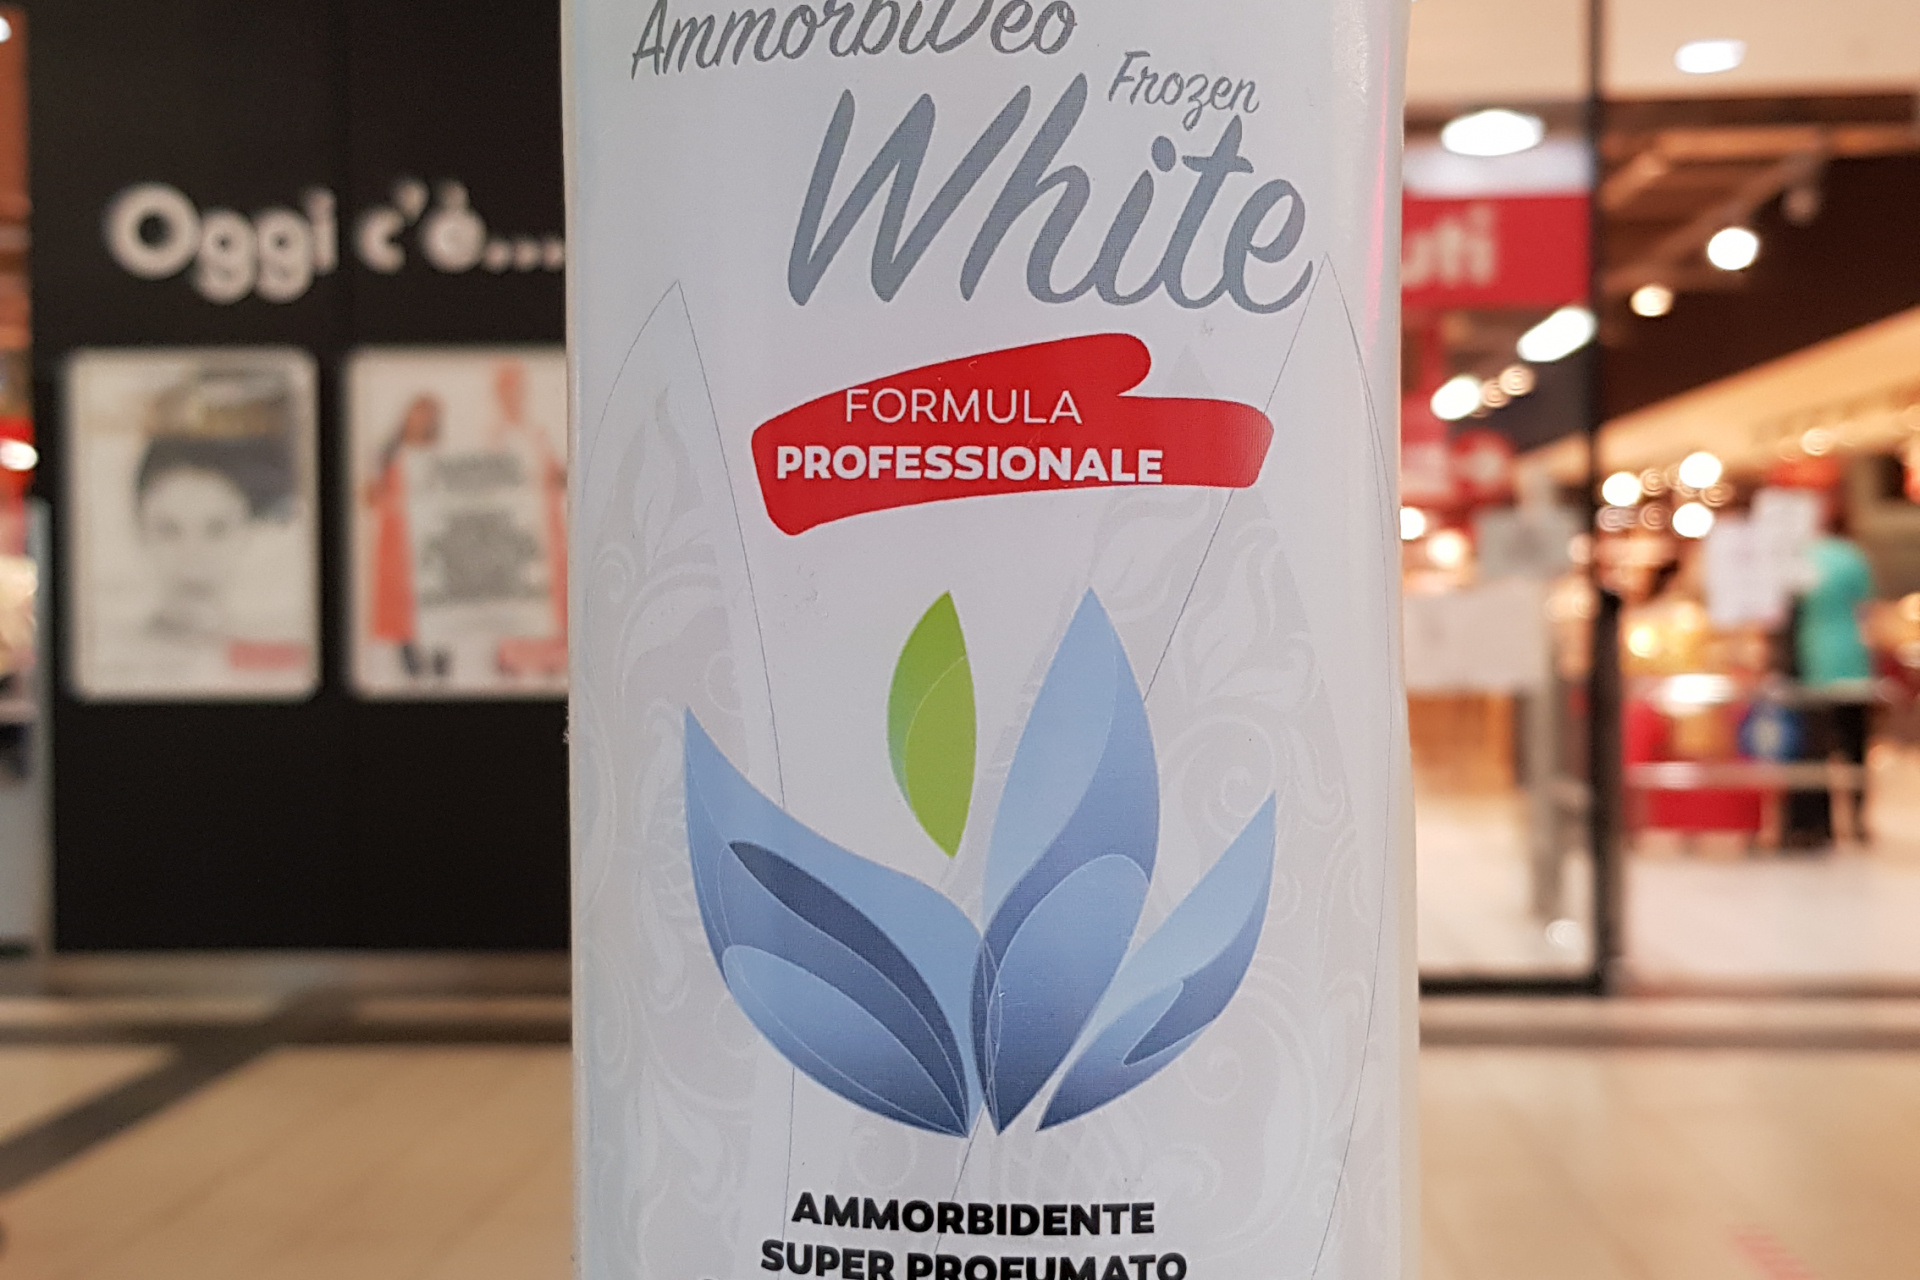 White AmmorbiDeo